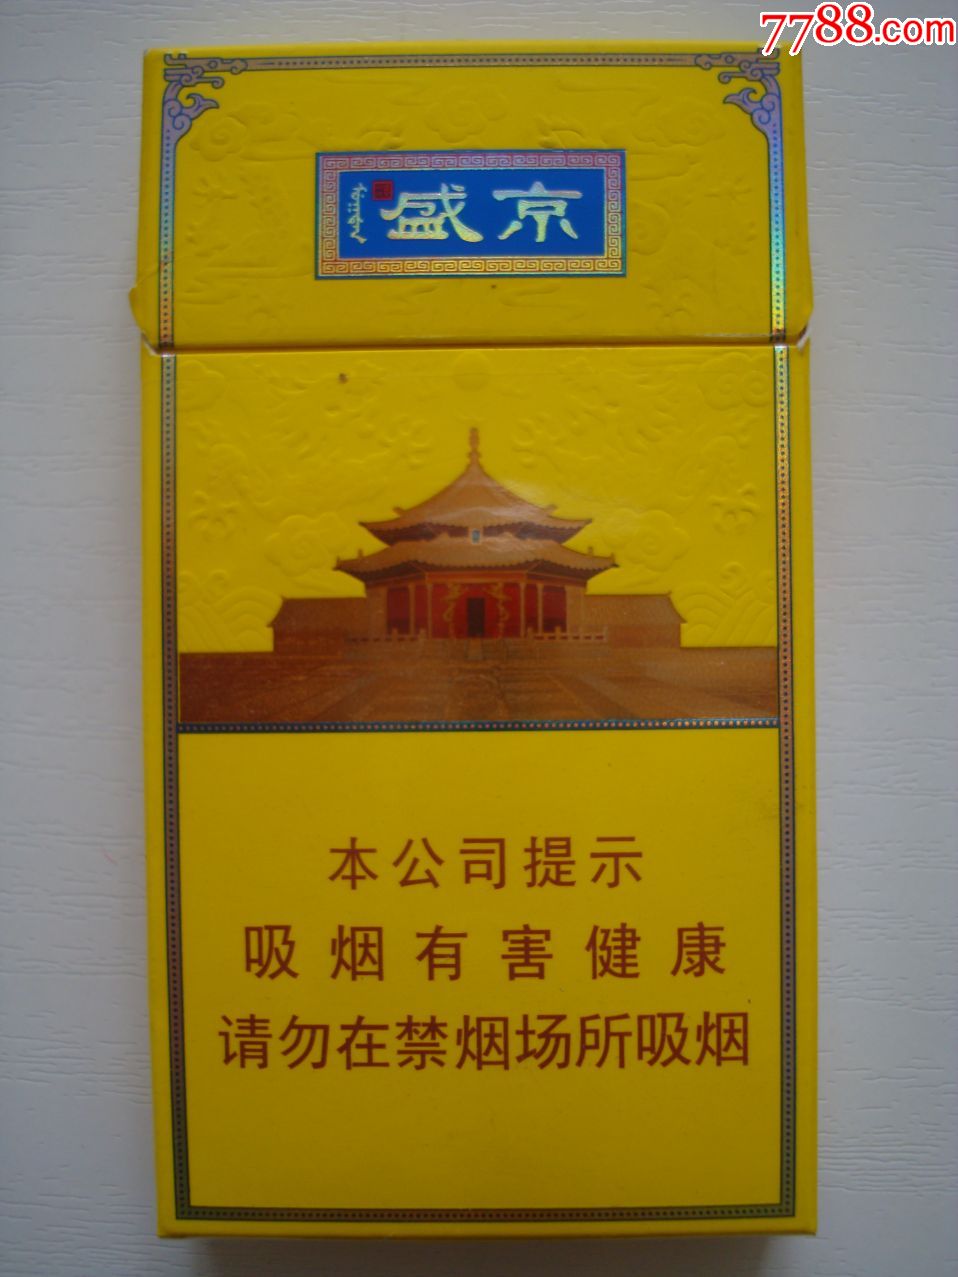 人民大会堂――盛京――细支-烟标/烟盒-7788收藏